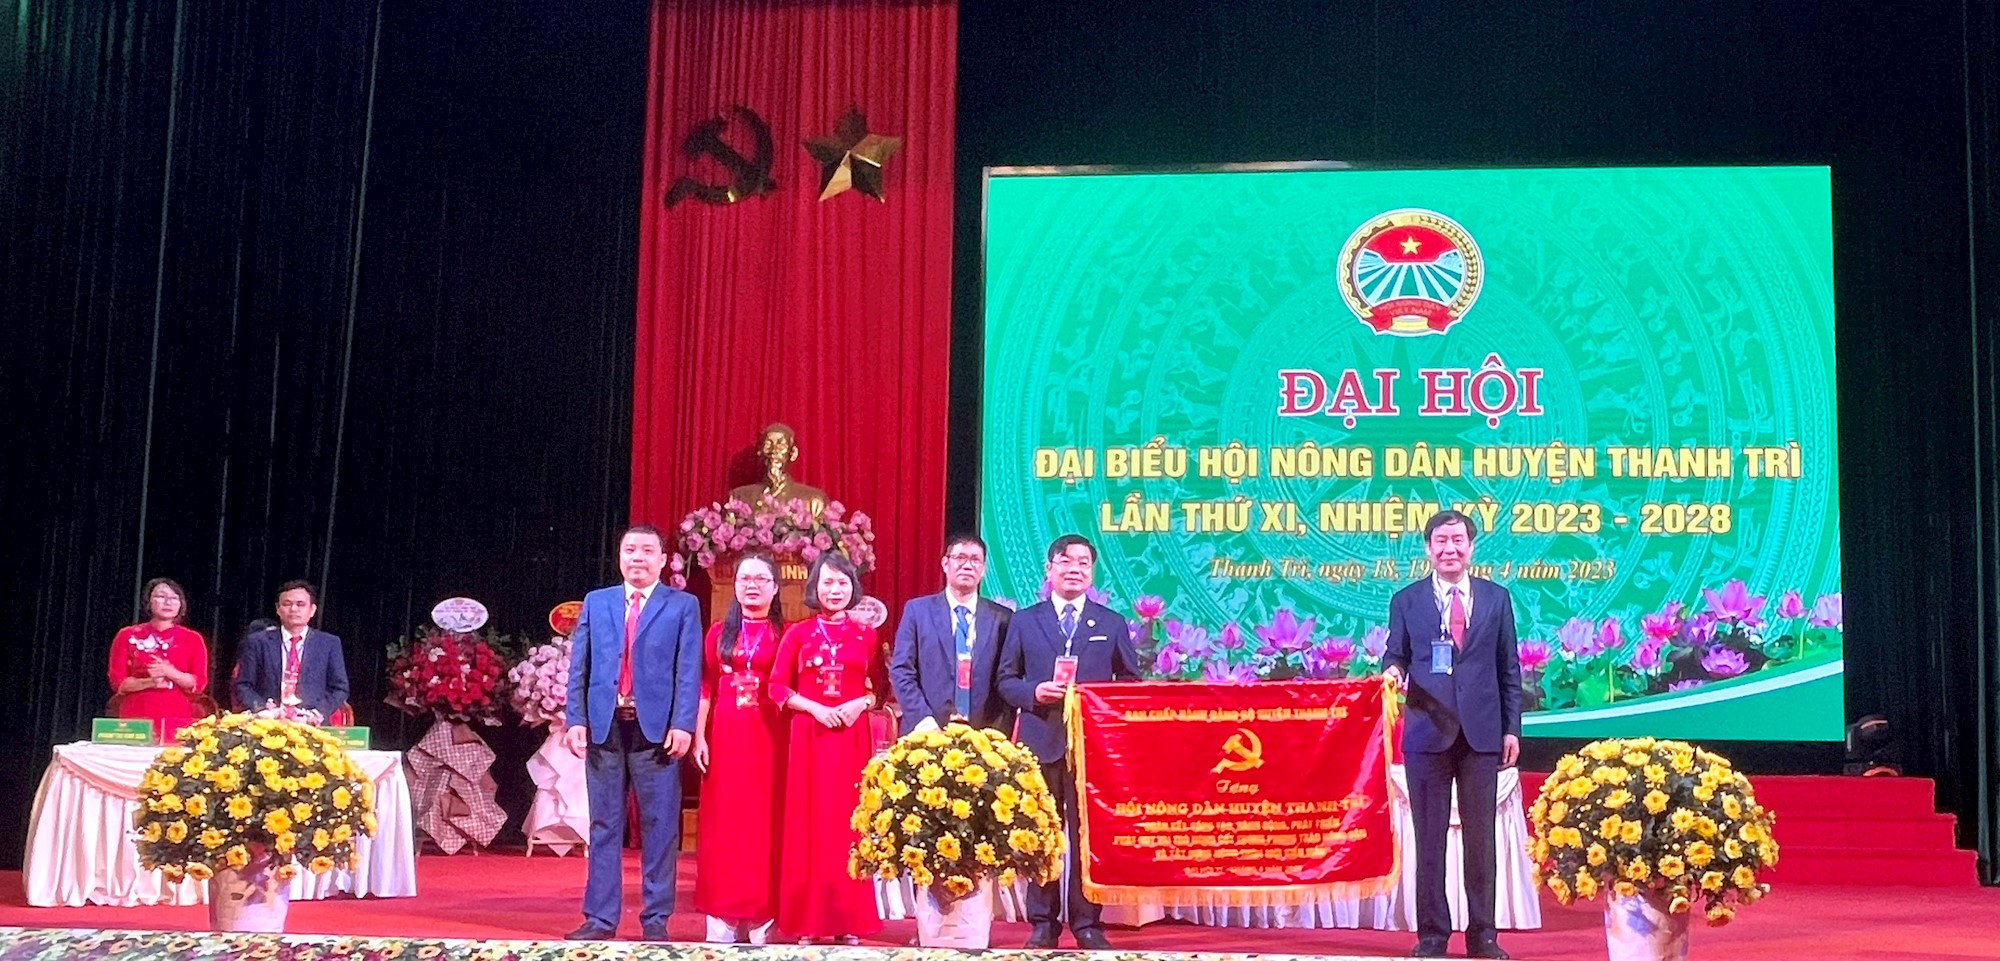 Hà Nội: Ông Nguyễn Sỹ Thành được bầu tái đắc cử chức Chủ tịch Hội Nông dân huyện Thanh Trì - Ảnh 2.